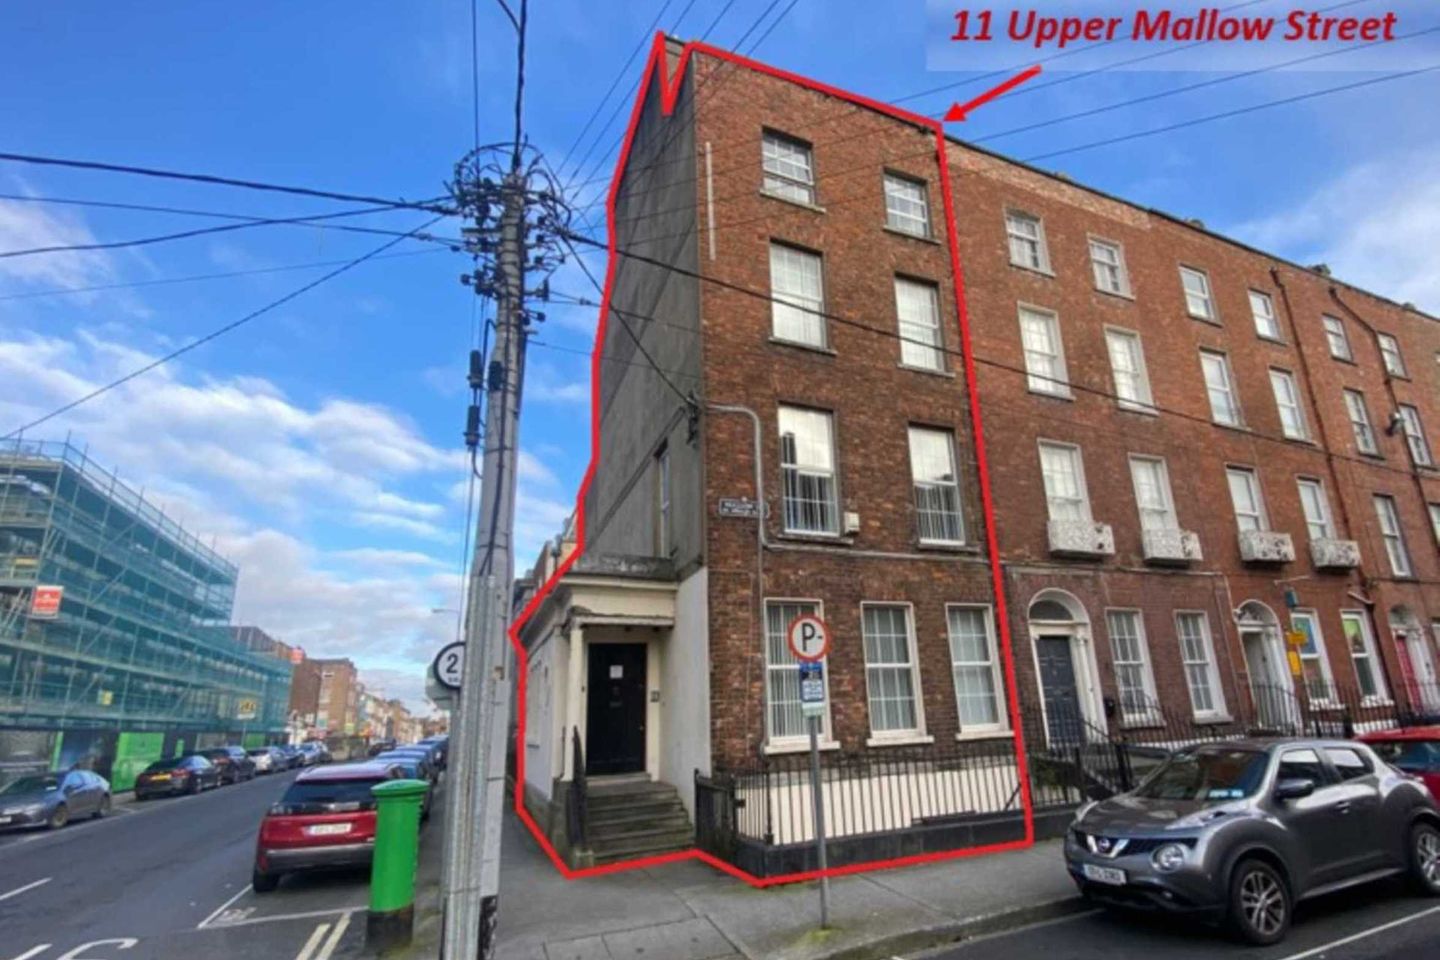 11 Upper Mallow Street, Limerick City, Co. Limerick, V94WRN4